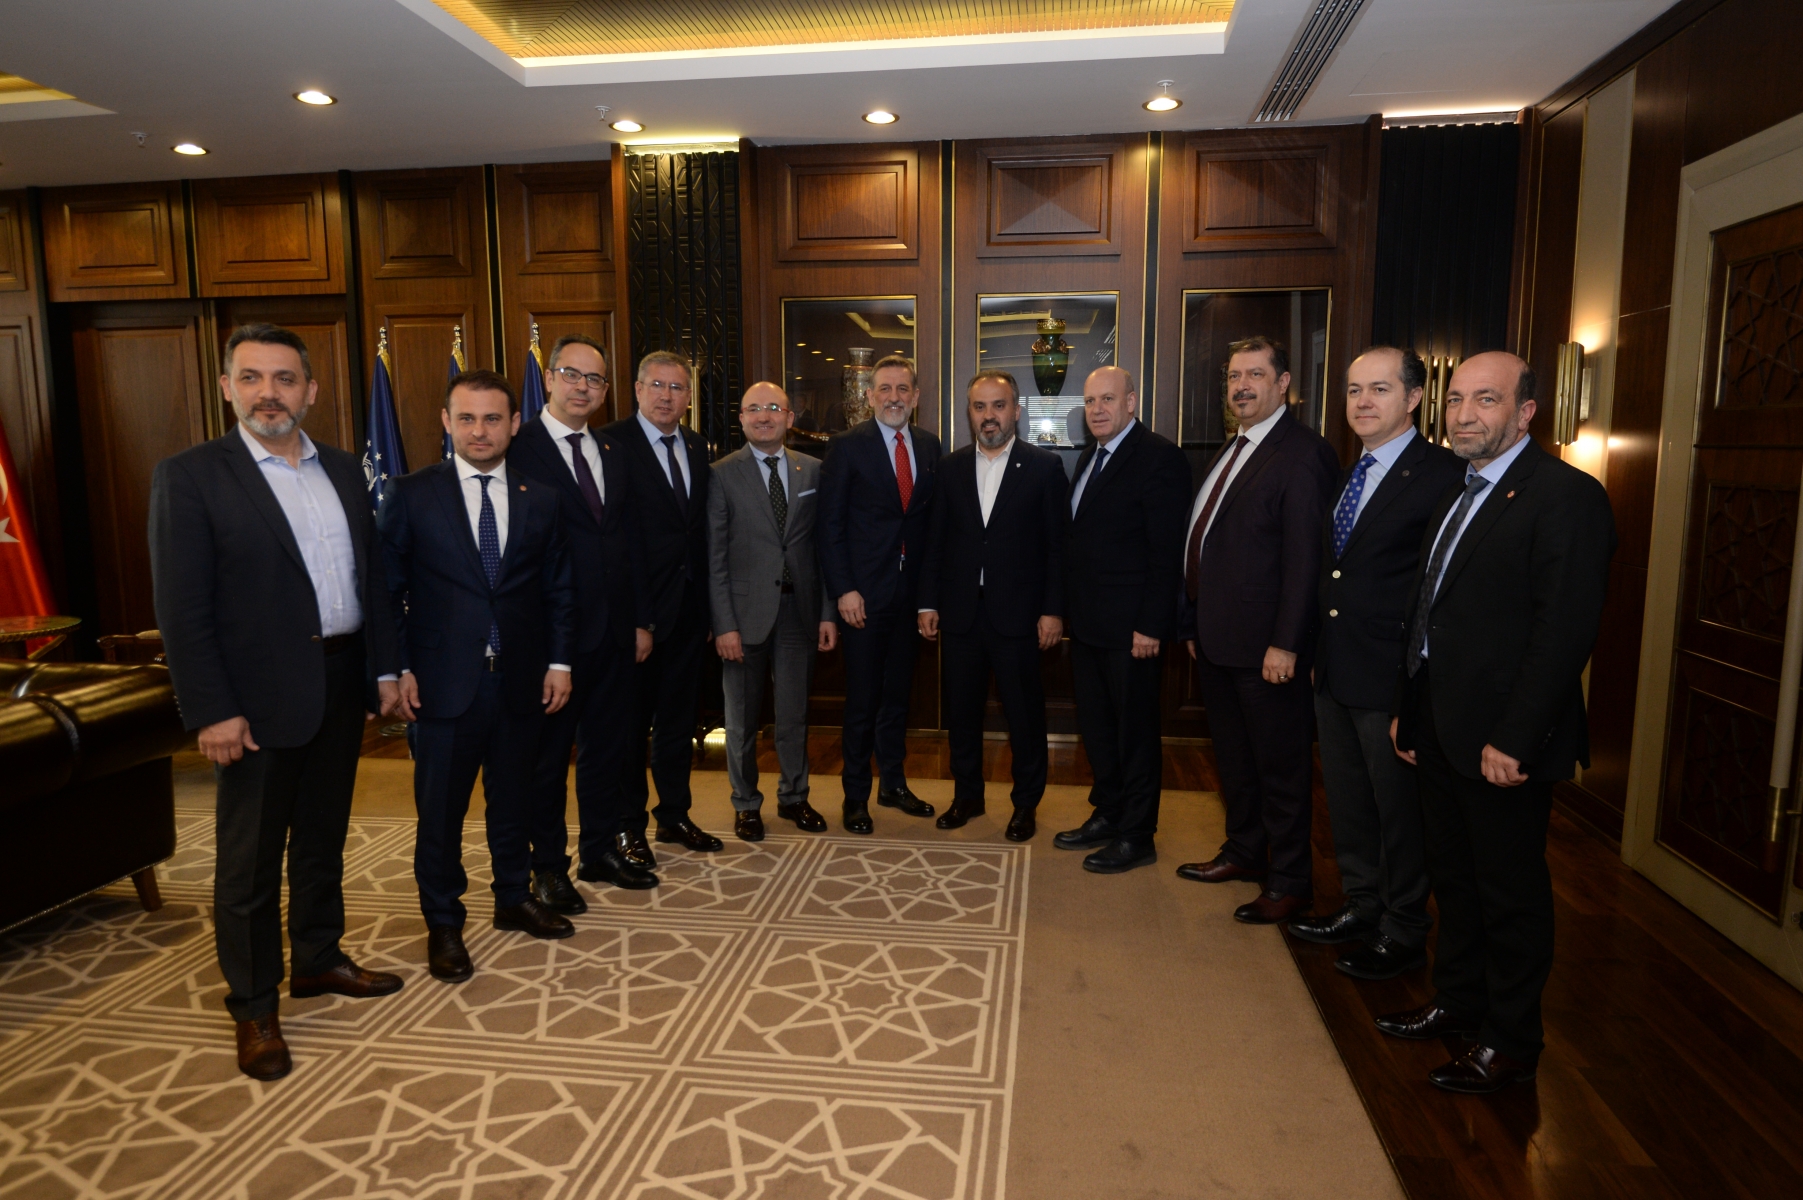 Bursa Ticaret ve Sanayi Odası Yönetim Kurulu Başkanı İbrahim Burkay, Yönetim Kurulu ve Meclis Başkanlık Divanı üyeleri ile birlikte Bursa Büyükşehir Belediye Başkanı Alinur Aktaş’ı ziyaret etti.